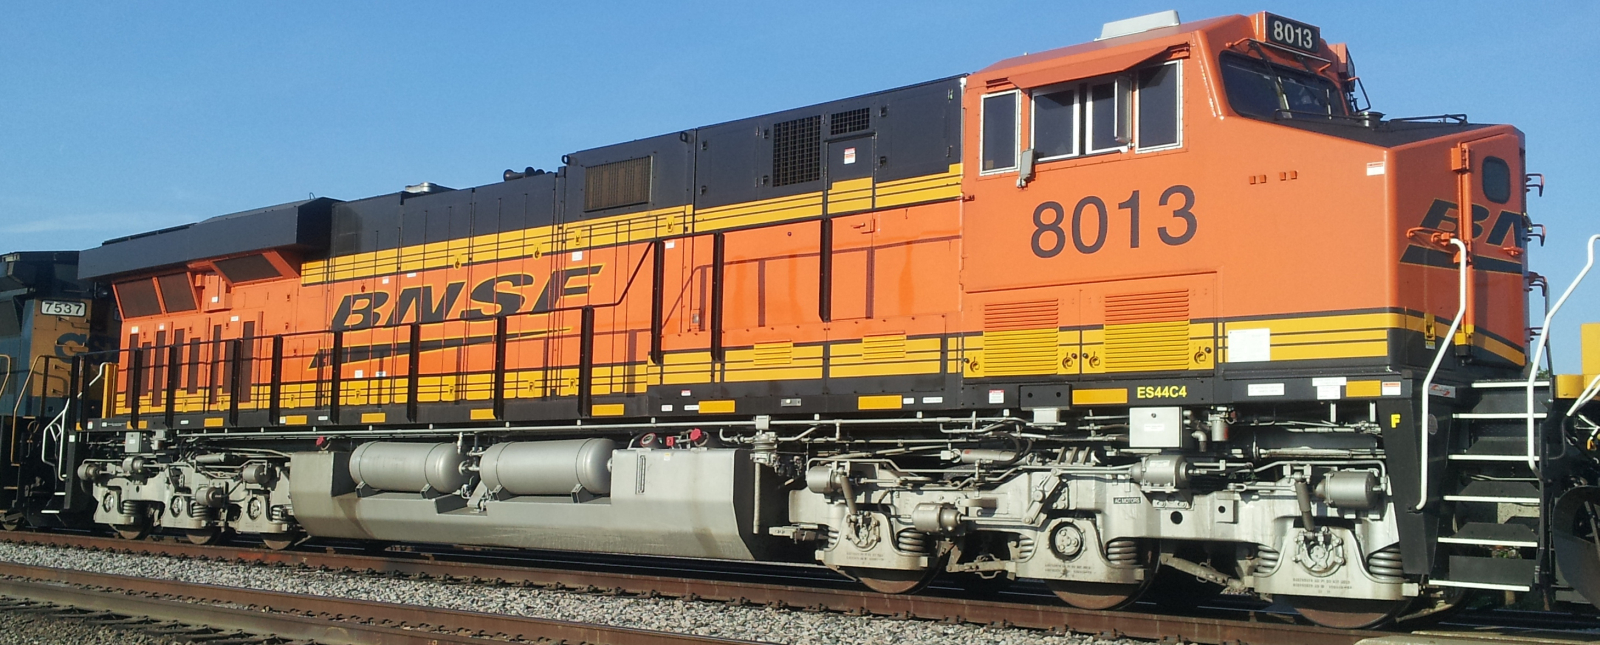 BNSF No. 8013 in May 2014 in Dallas, Texas